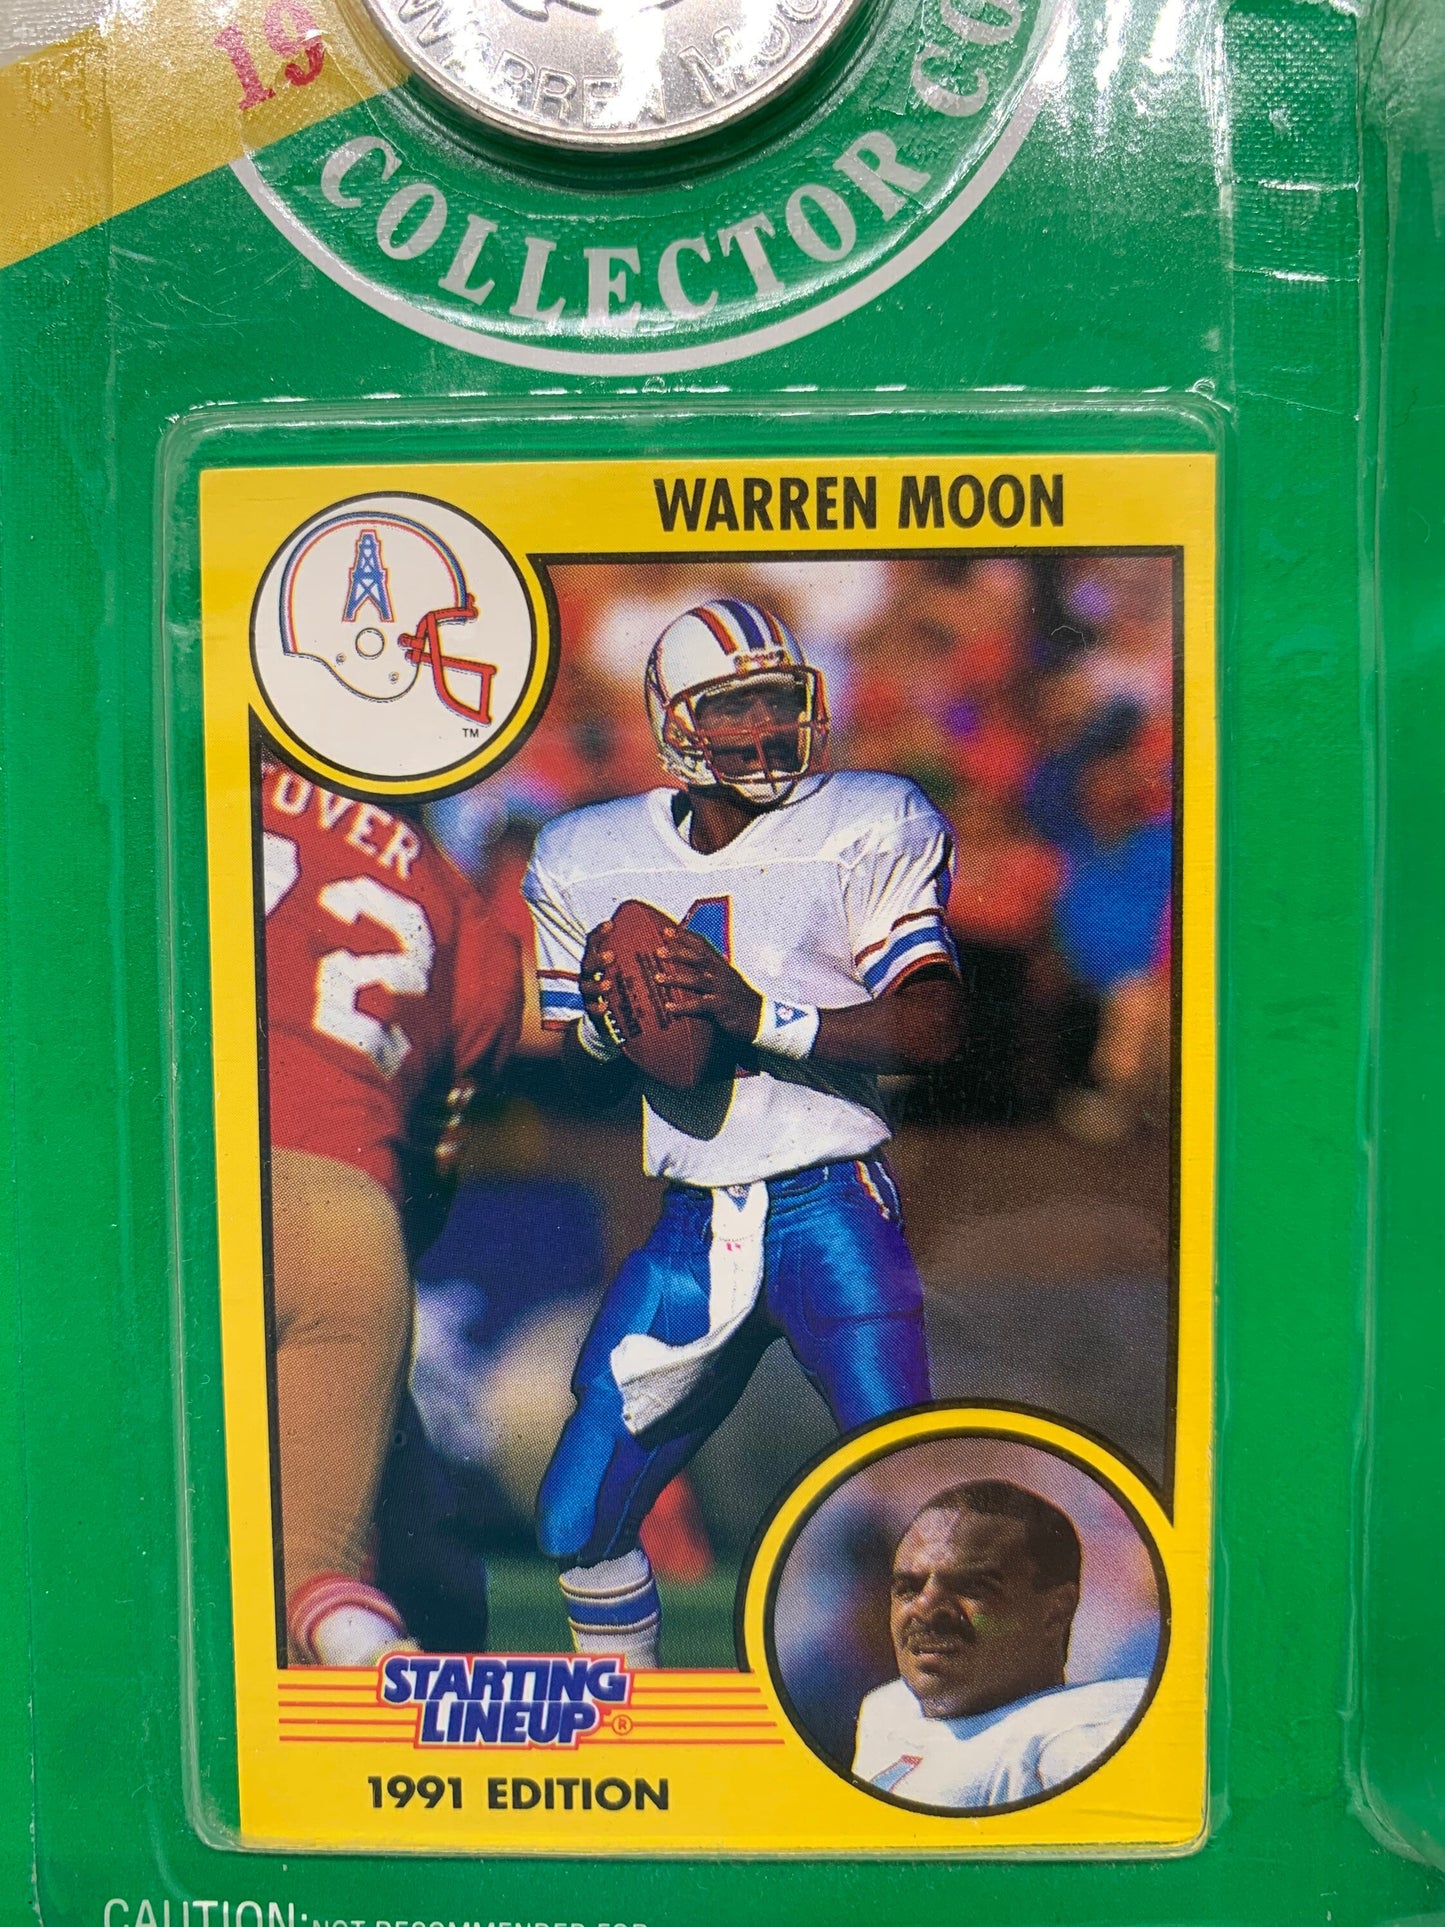 Starting Lineup Warren Moon Houston Oilers Action Figure Kenner 1990's Toys NFL Memorabilia